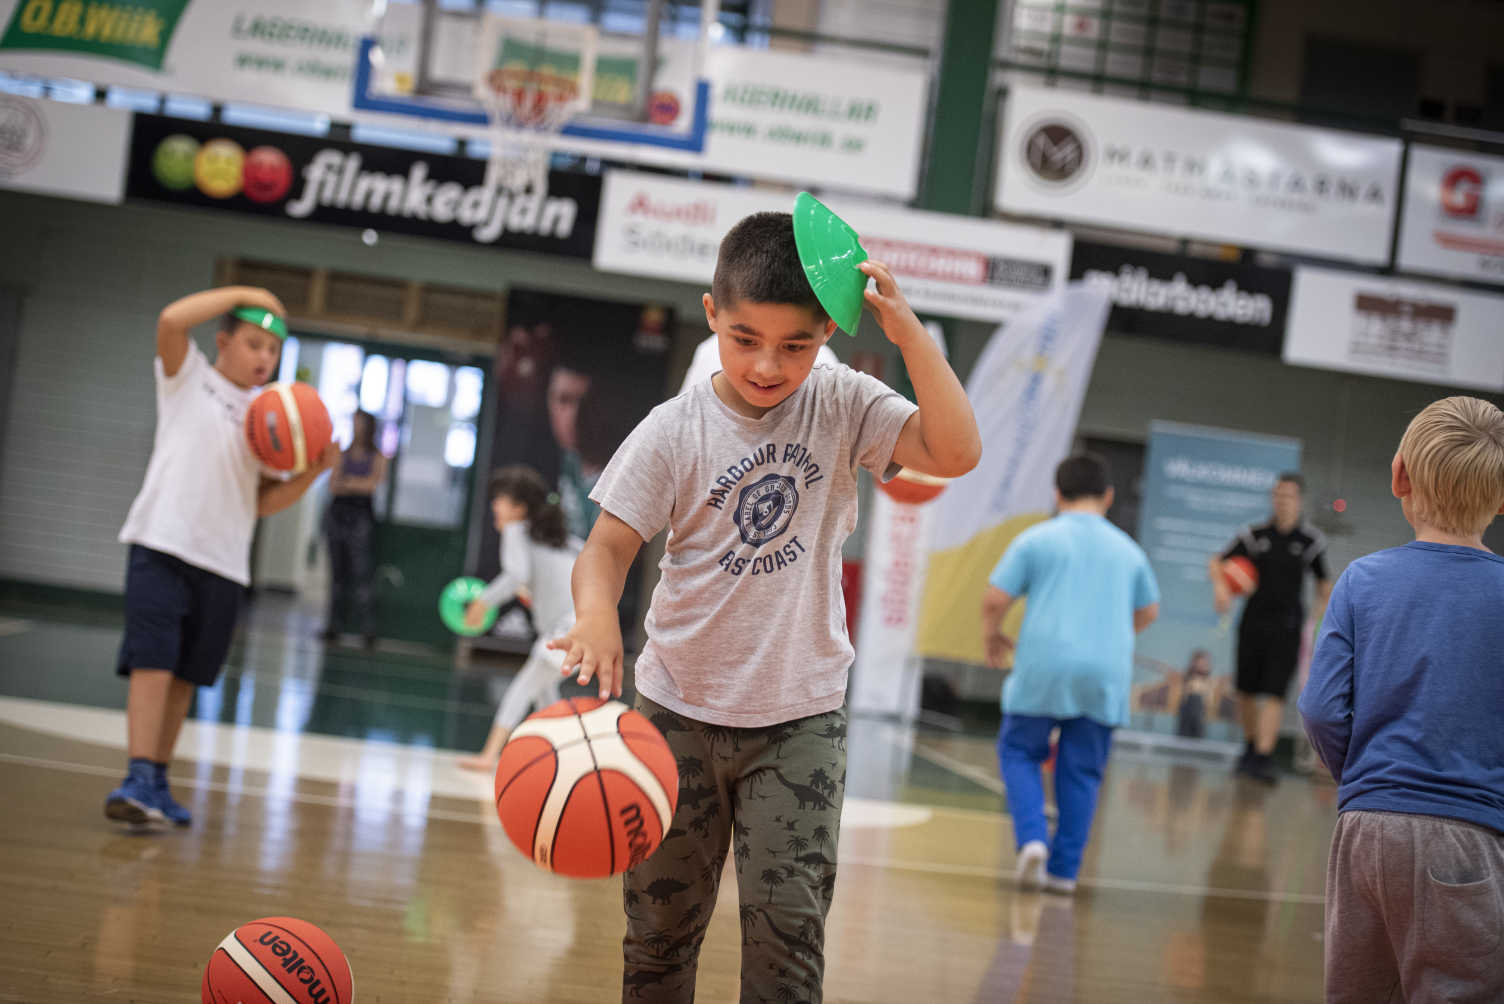 Pojke studsar en basketboll framför sig i idrottshall, andra barn studsar bollar i bakgrunden. 